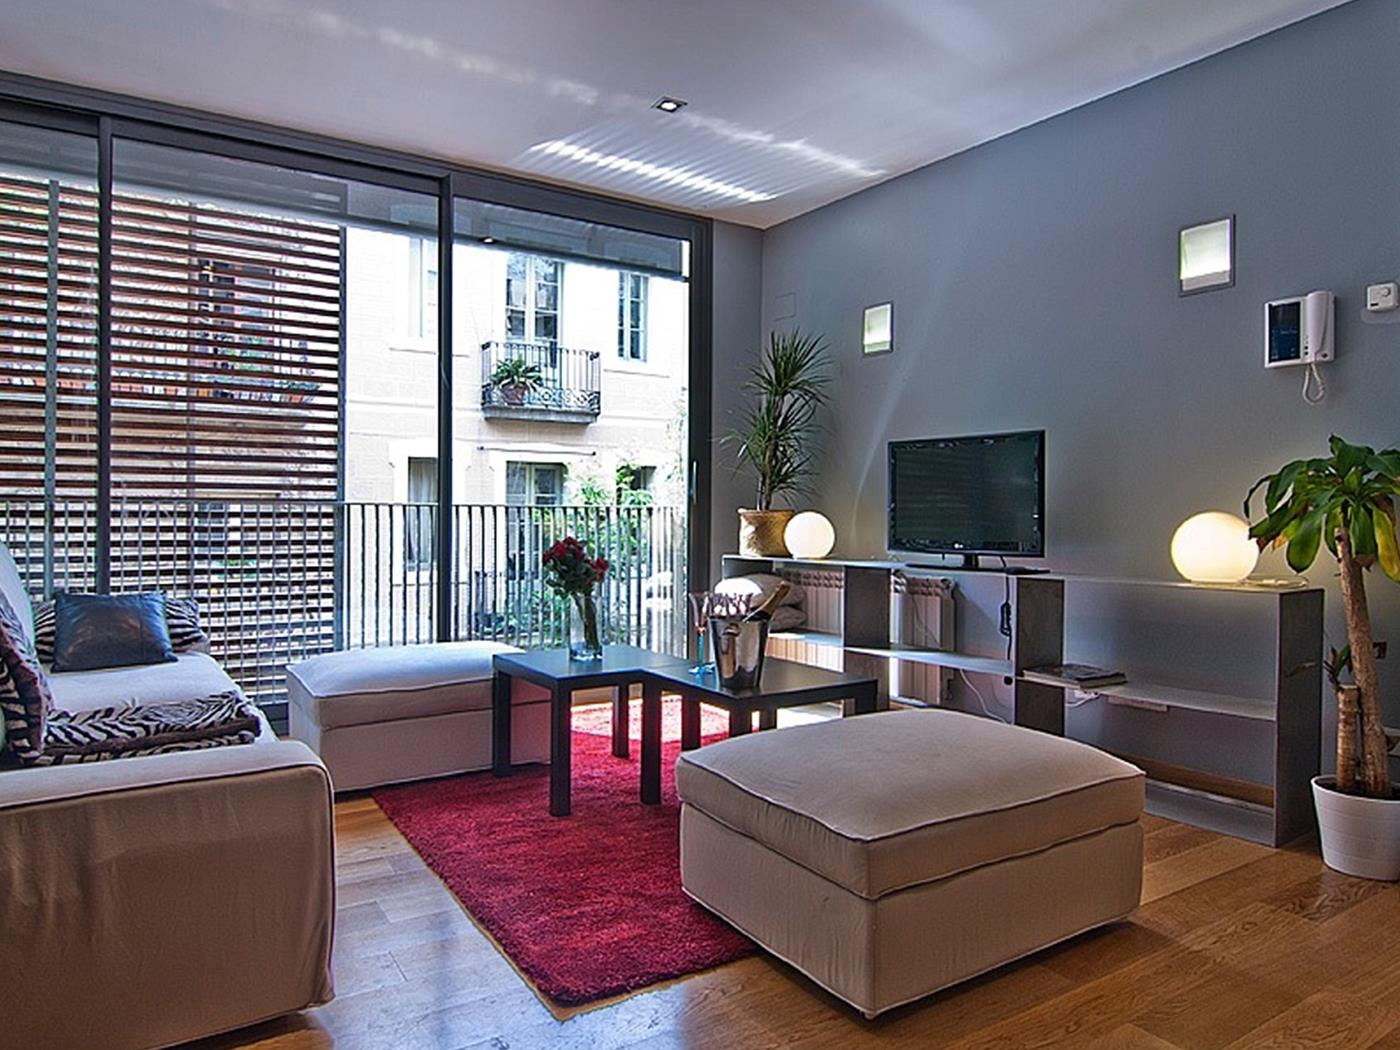 شقة علوية في غراسيا مع بركة وتراس - My Space Barcelona شقة